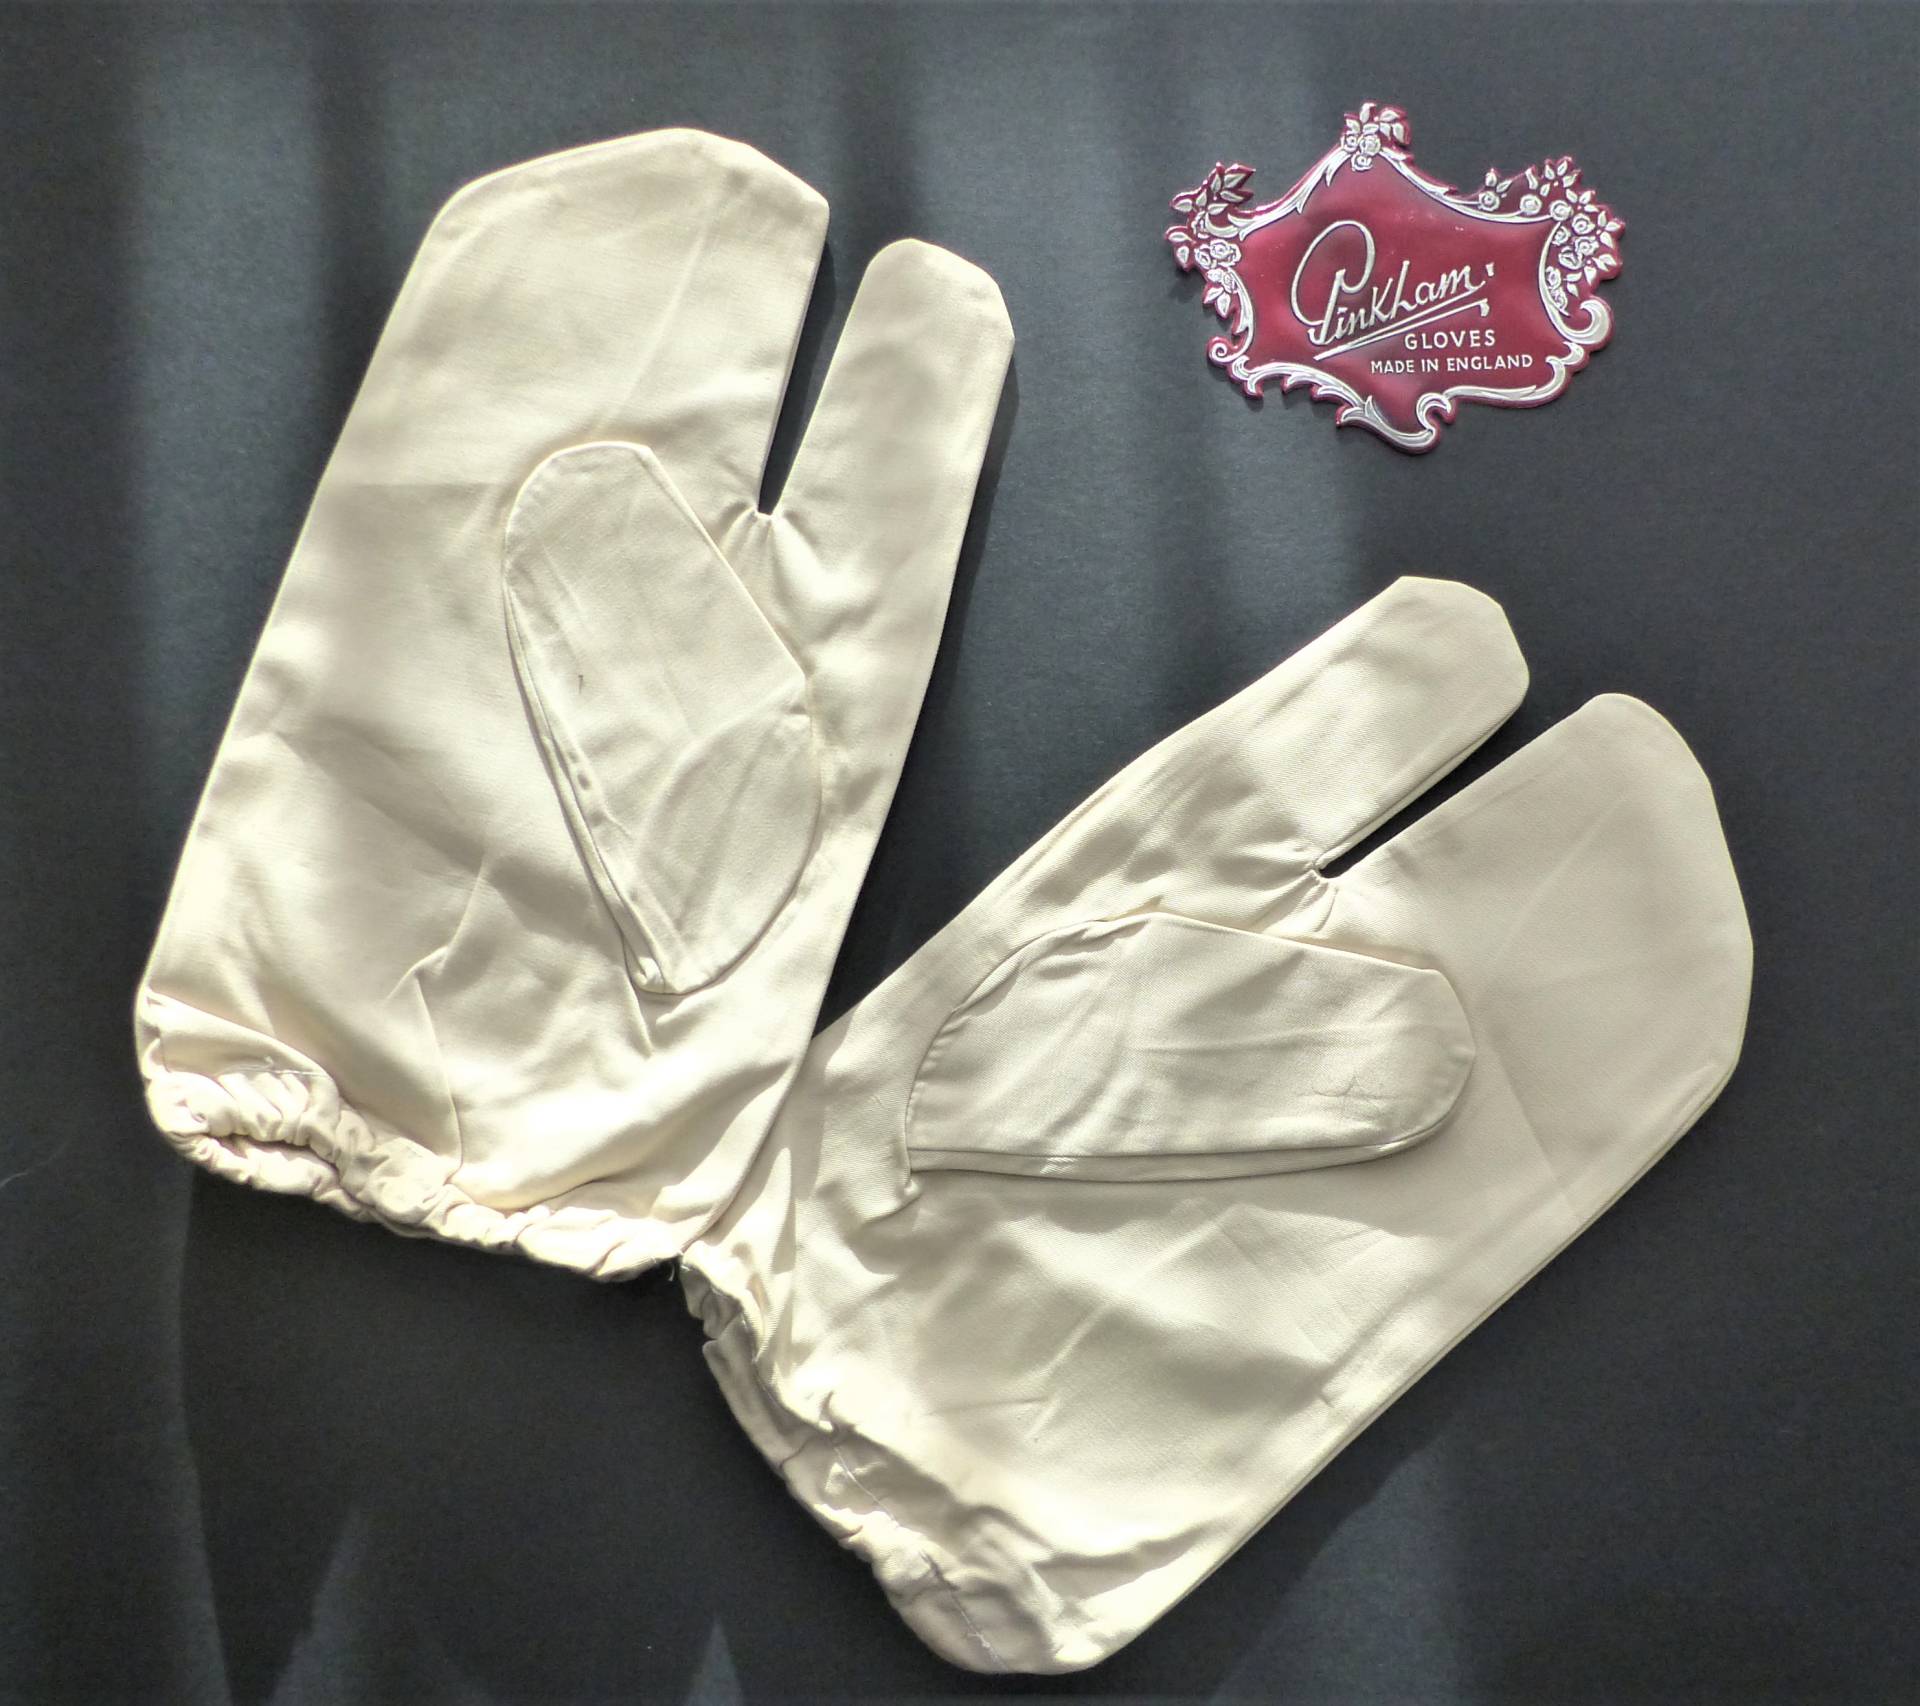 Gunner's gloves